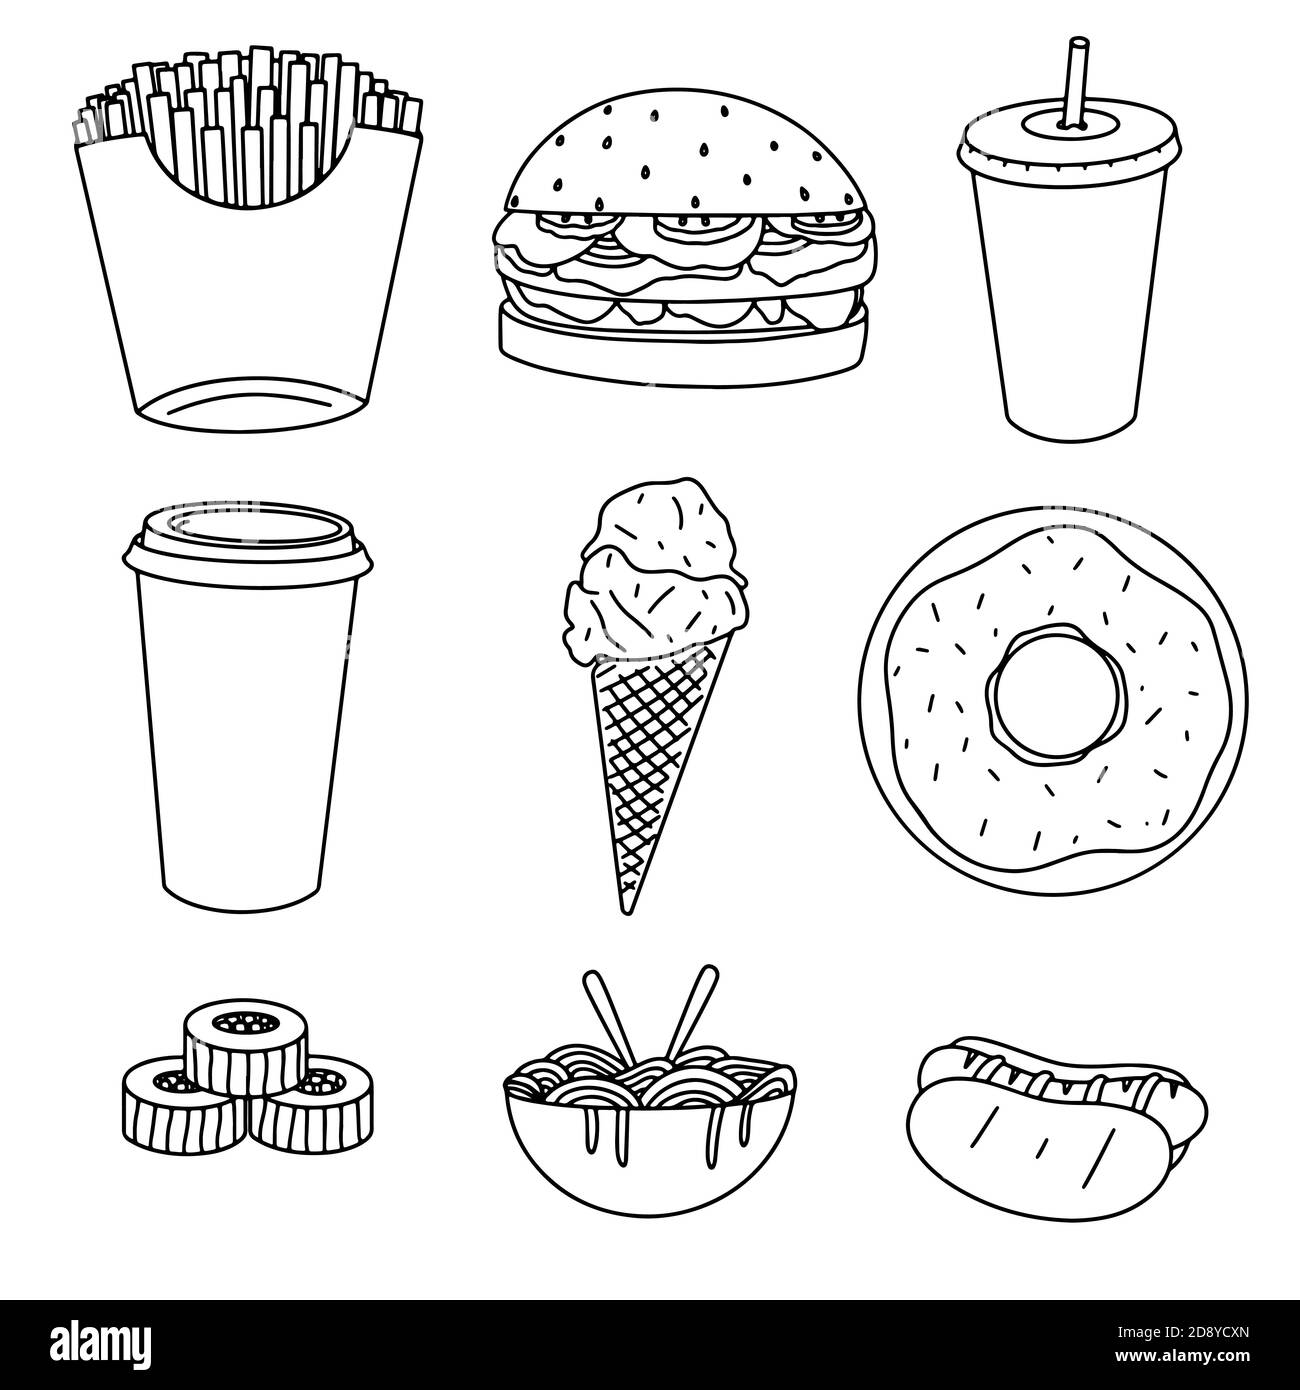 Fastfood-bezogene handgezeichnete Doodles: Pommes, Burger, Getränk, Kaffee, Eis, Donut, Sushi, Nudeln und Hot-Dog isoliert auf weißem Hintergrund Vektor i Stock Vektor